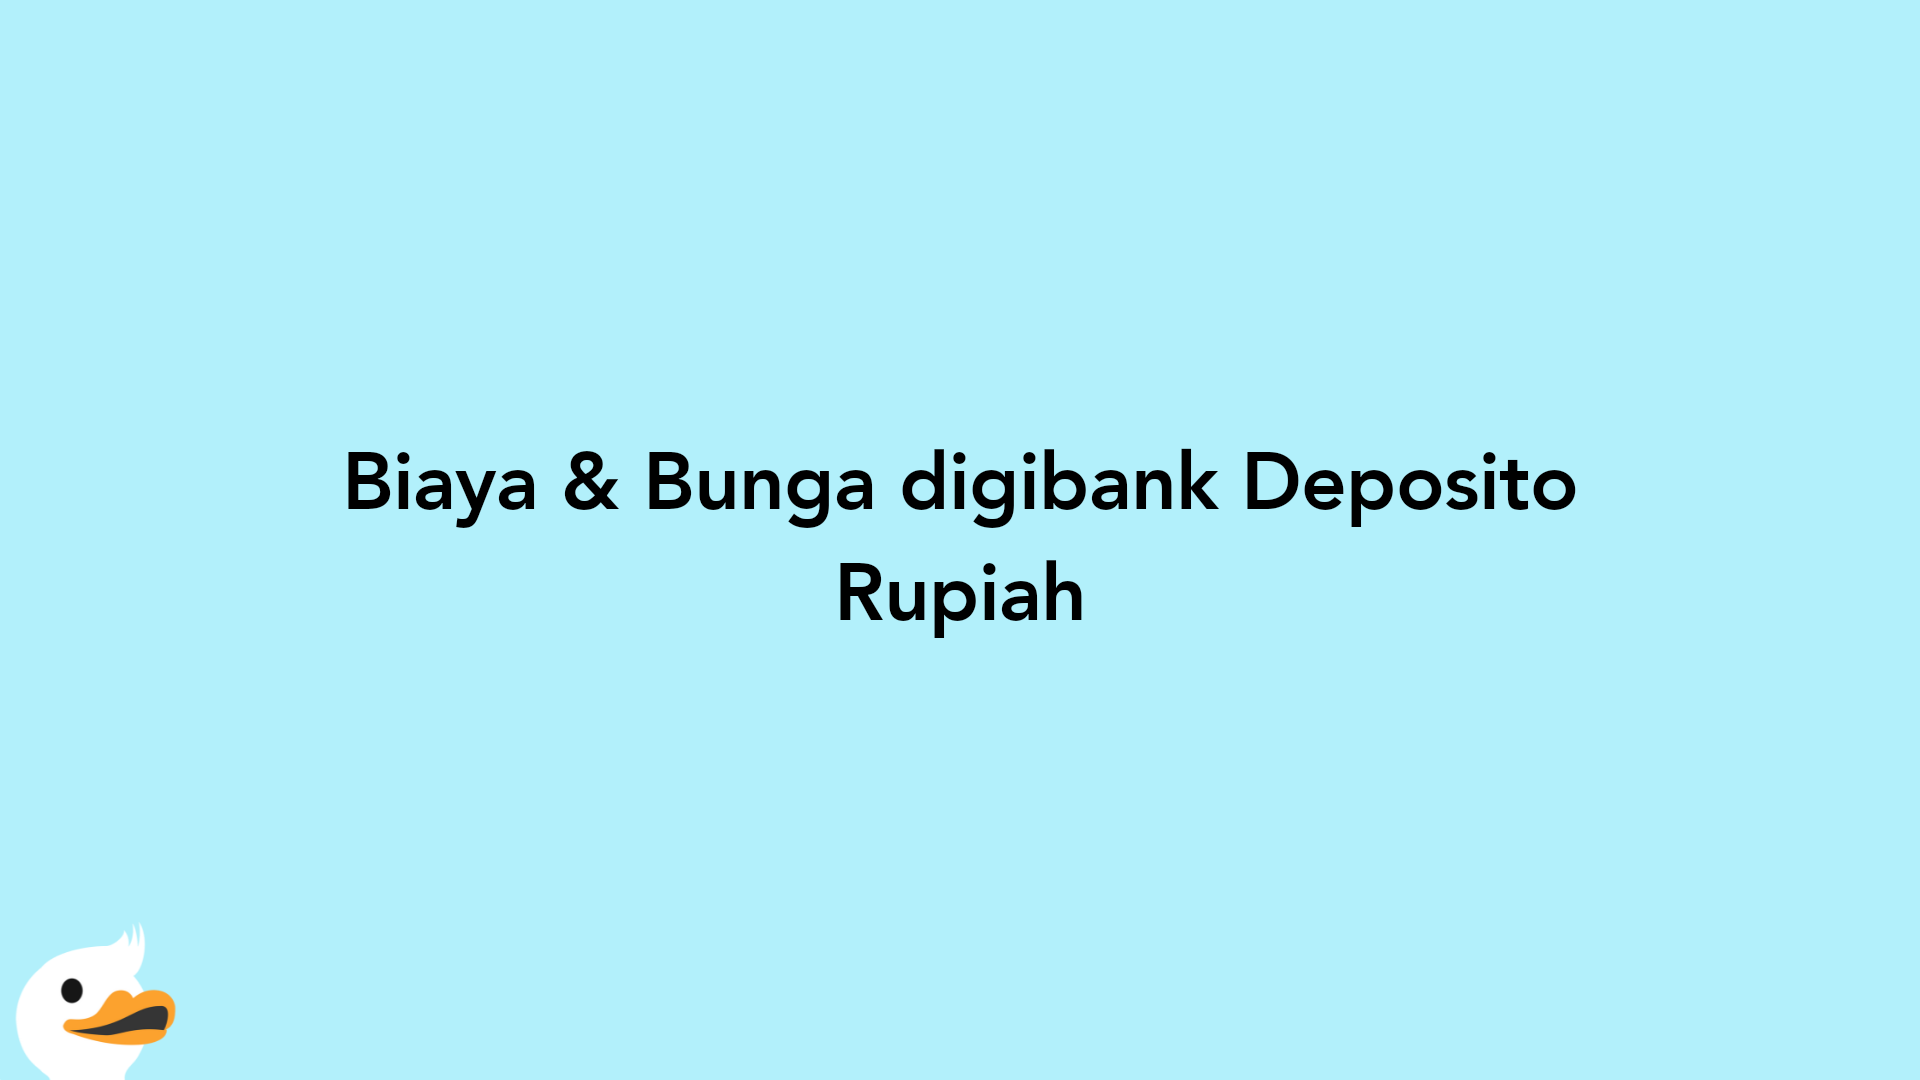 Biaya & Bunga digibank Deposito Rupiah